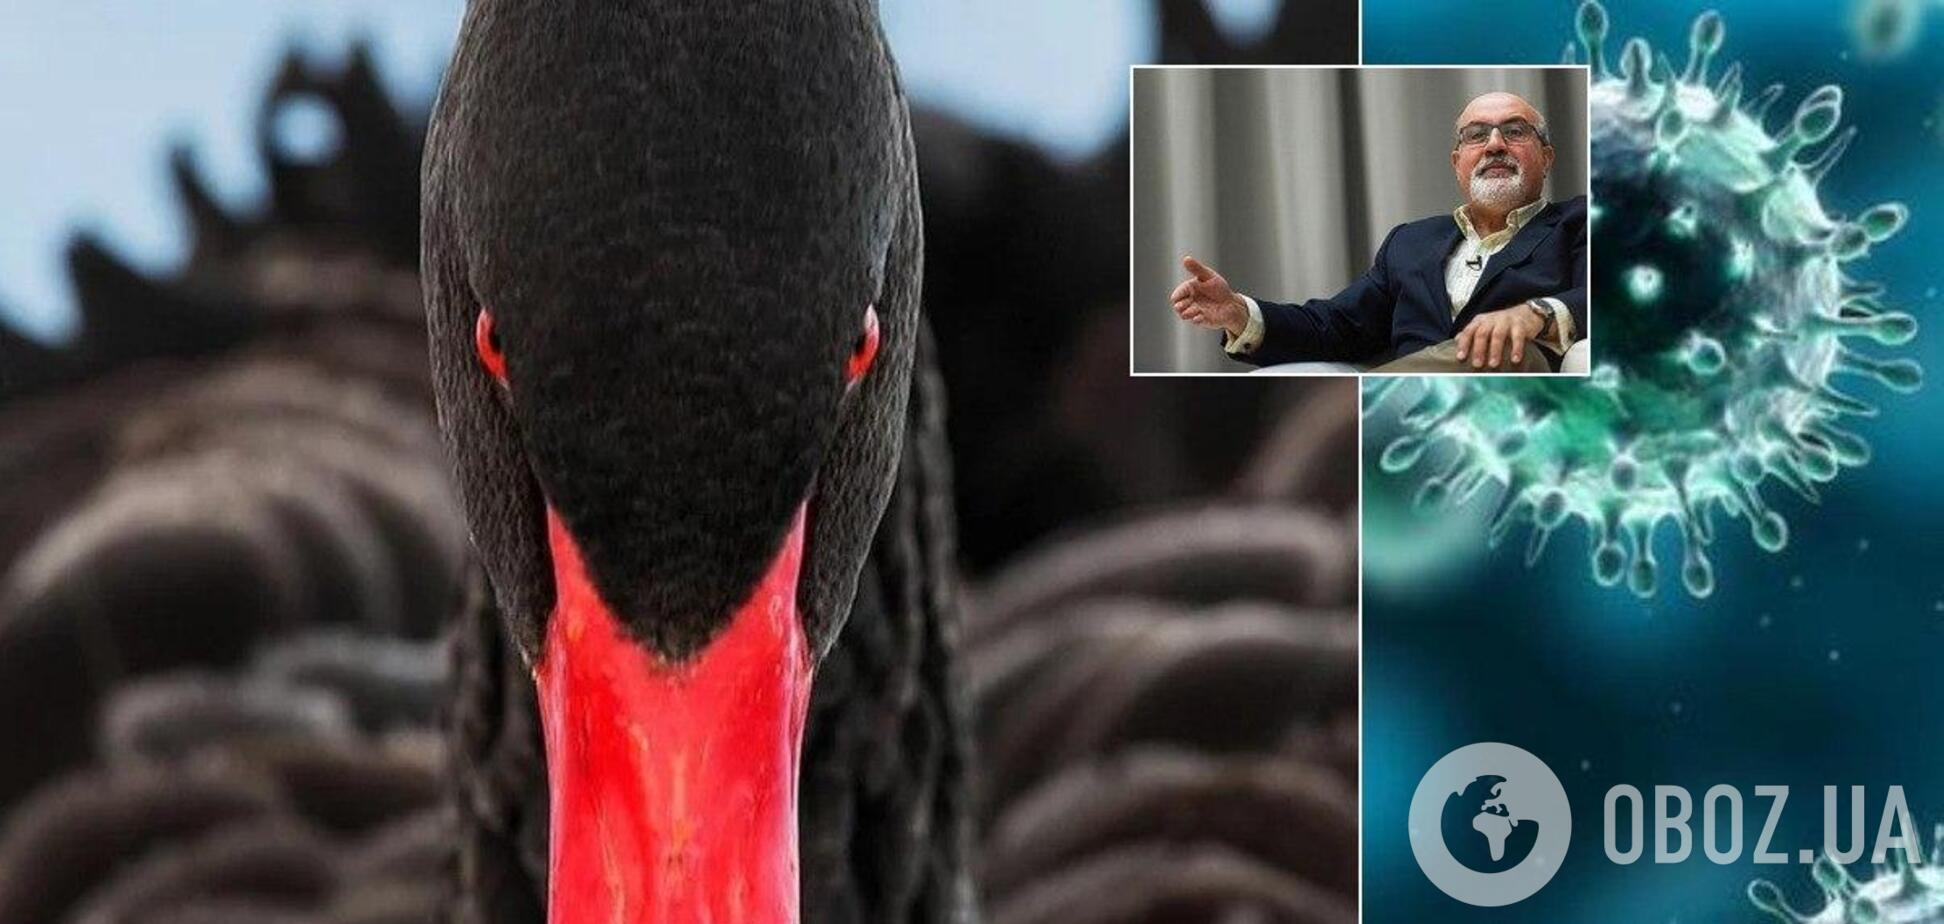 Коронавирус приведет человечество к новому этапу развития – автор 'Черного лебедя' Нассим Талеб